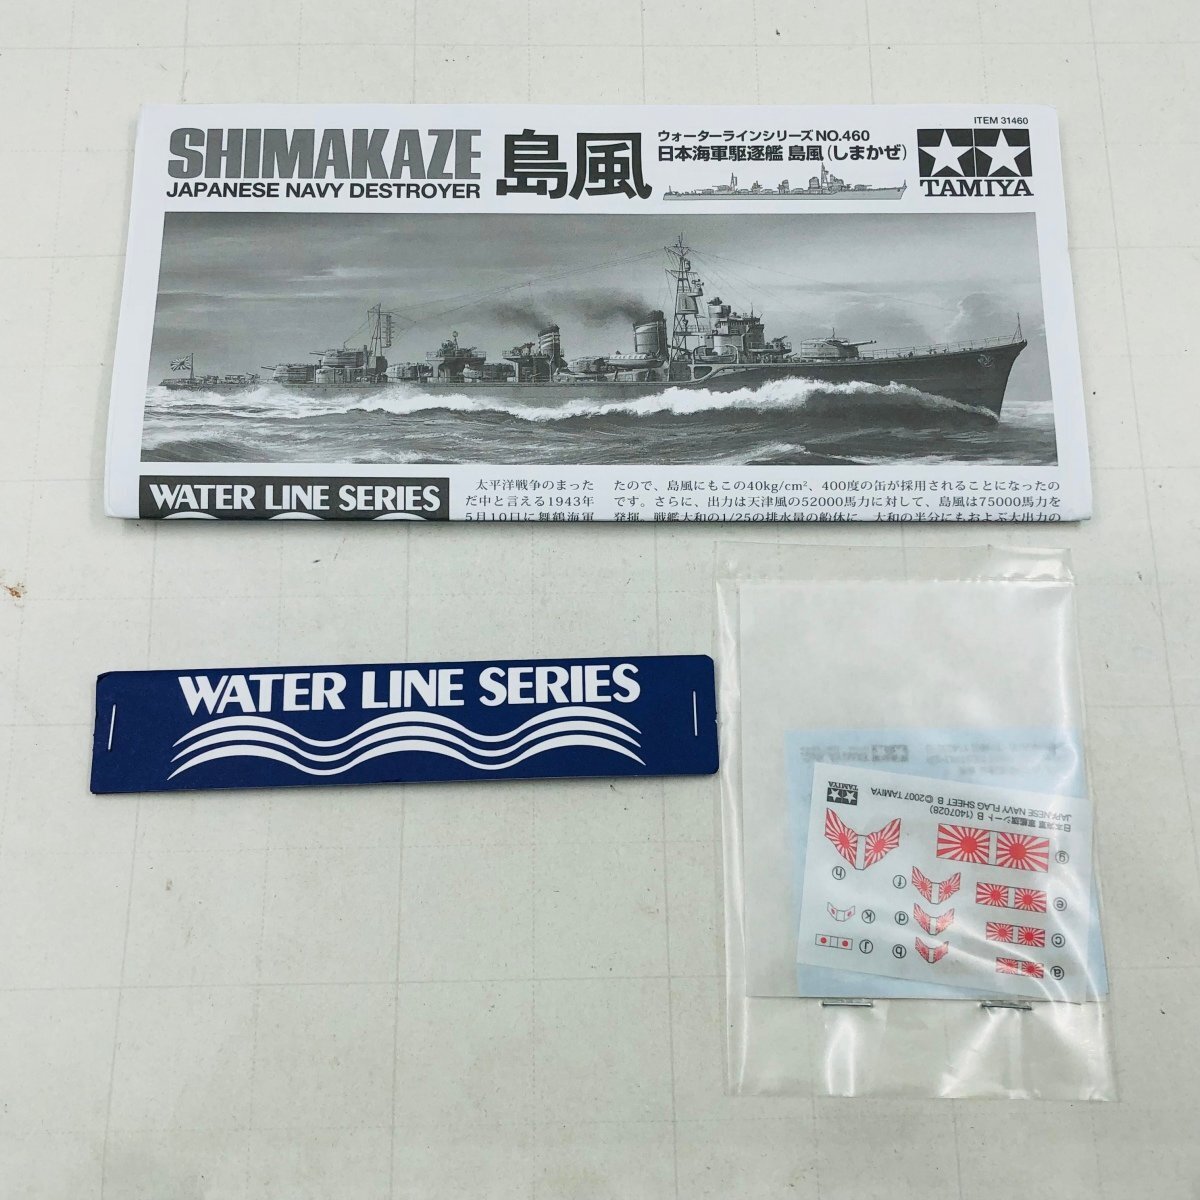 新品未組立 タミヤ 1/700 ウォーターラインシリーズ NO.460 日本海軍駆逐艦 島風 しまかぜ SHIMAKAZE_画像4